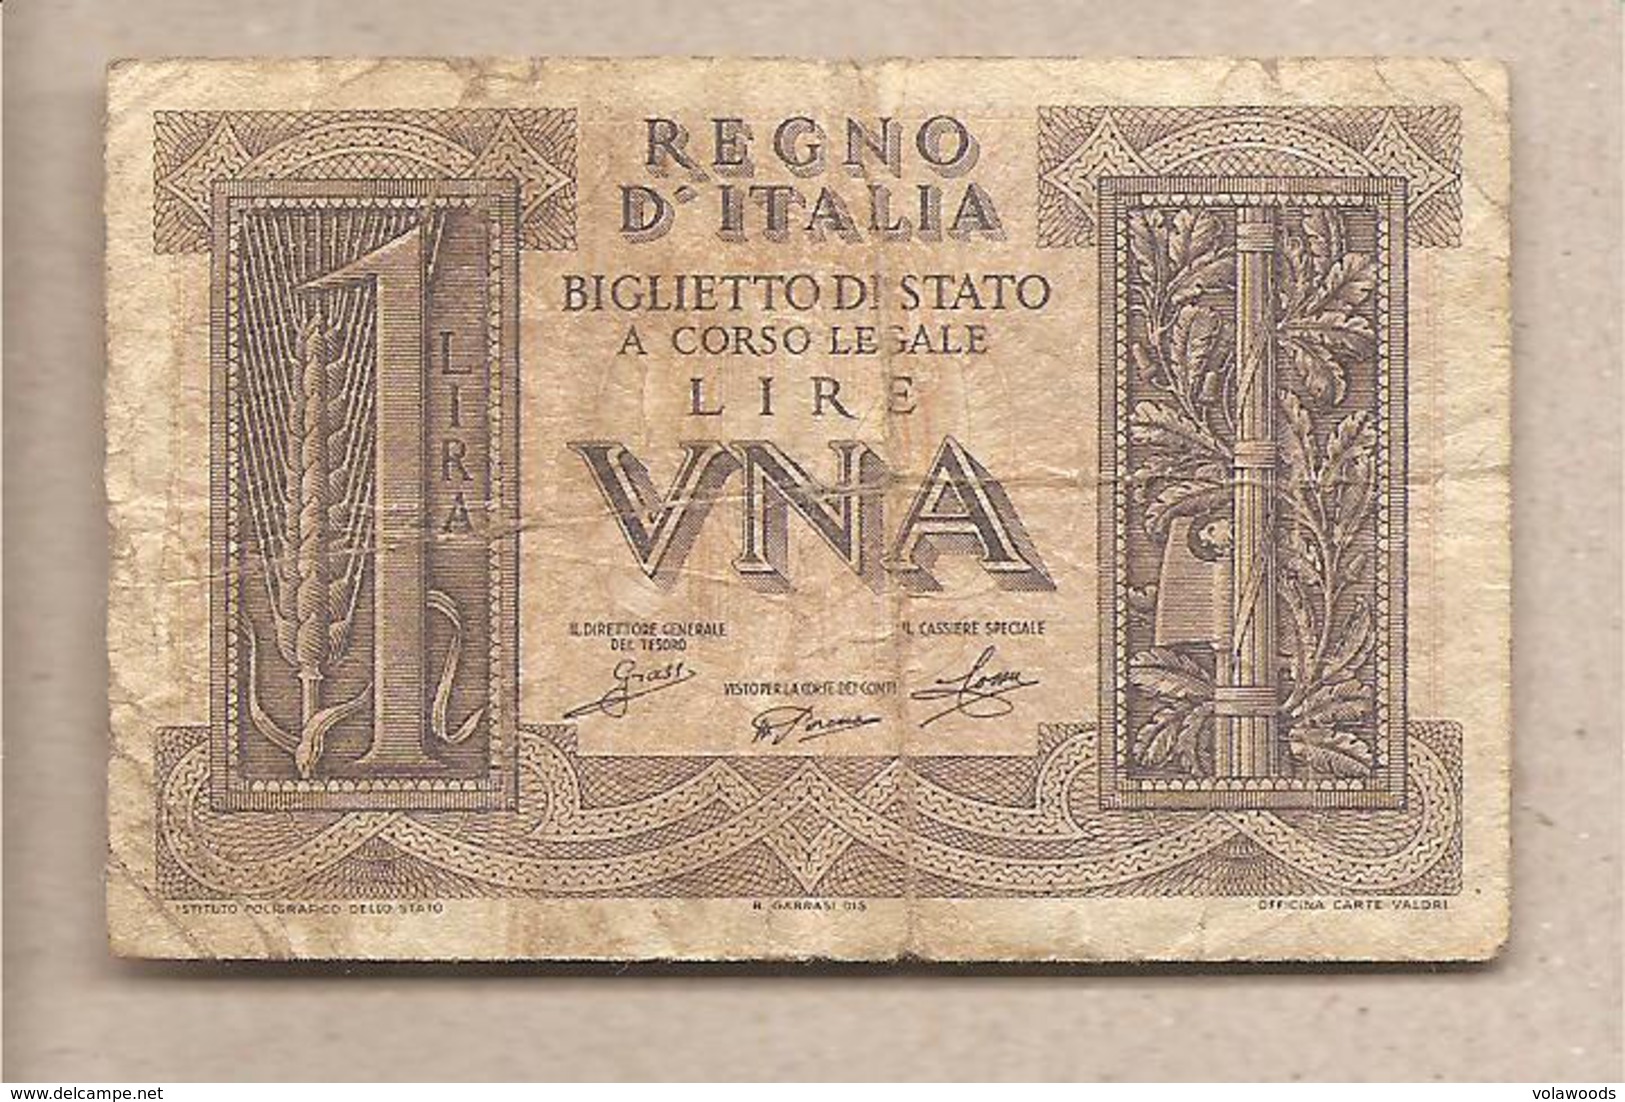 Italia - Banconota Circolata Da 1 Lira "Impero" P-26 - 1939 #17 - Regno D'Italia – 1 Lire